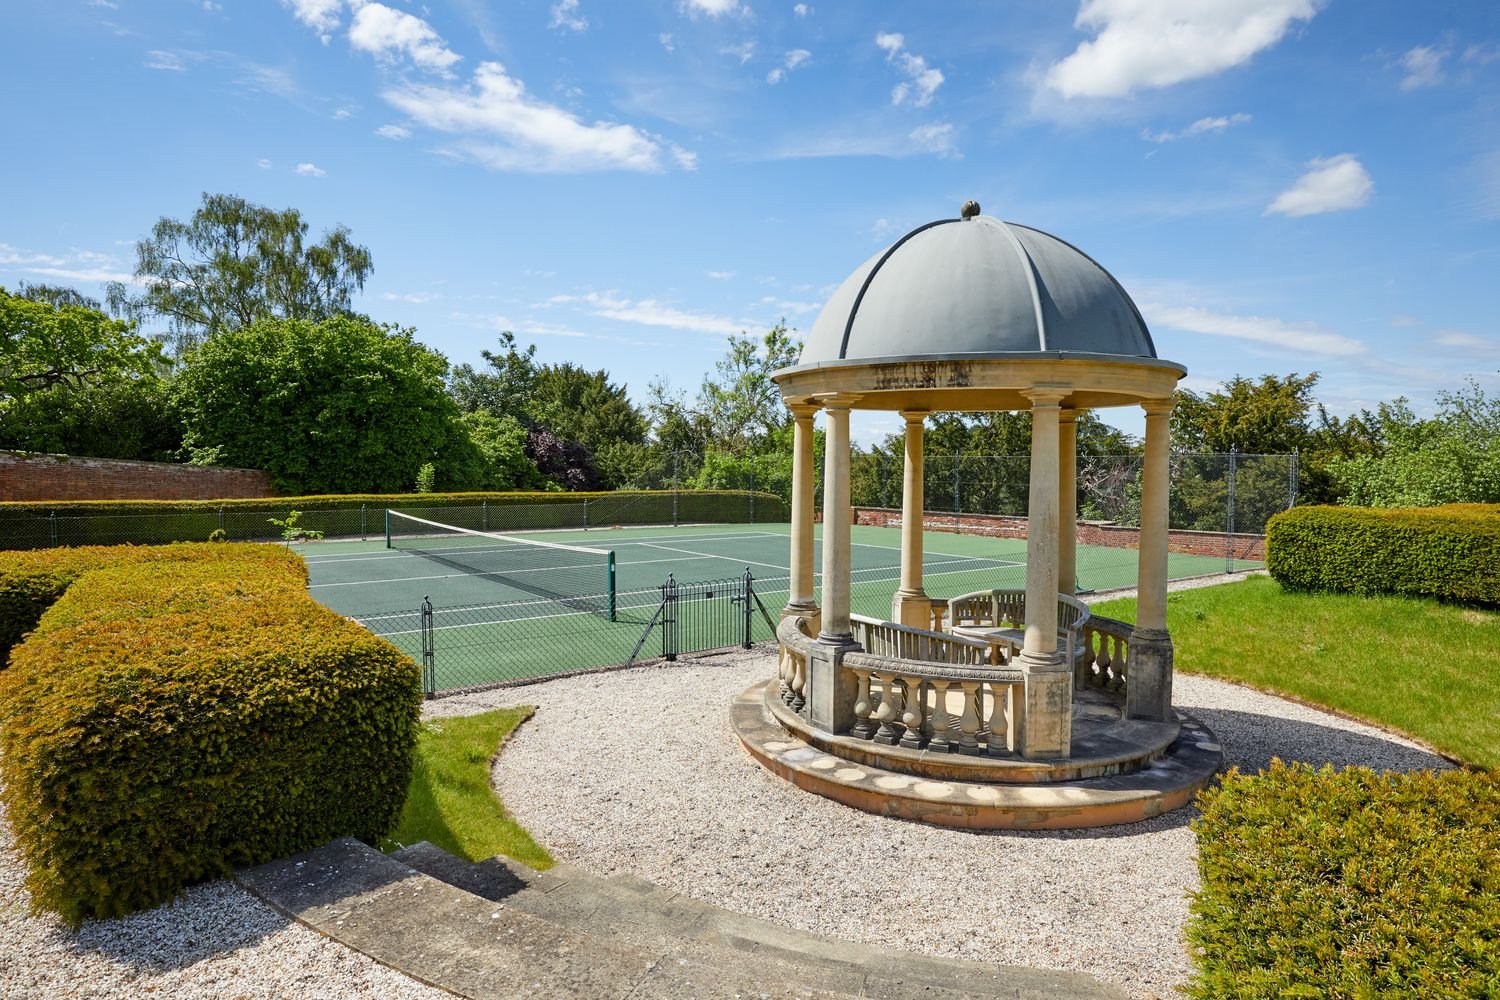 Casa del cantante Robbie Williams exterior con pista de tenis